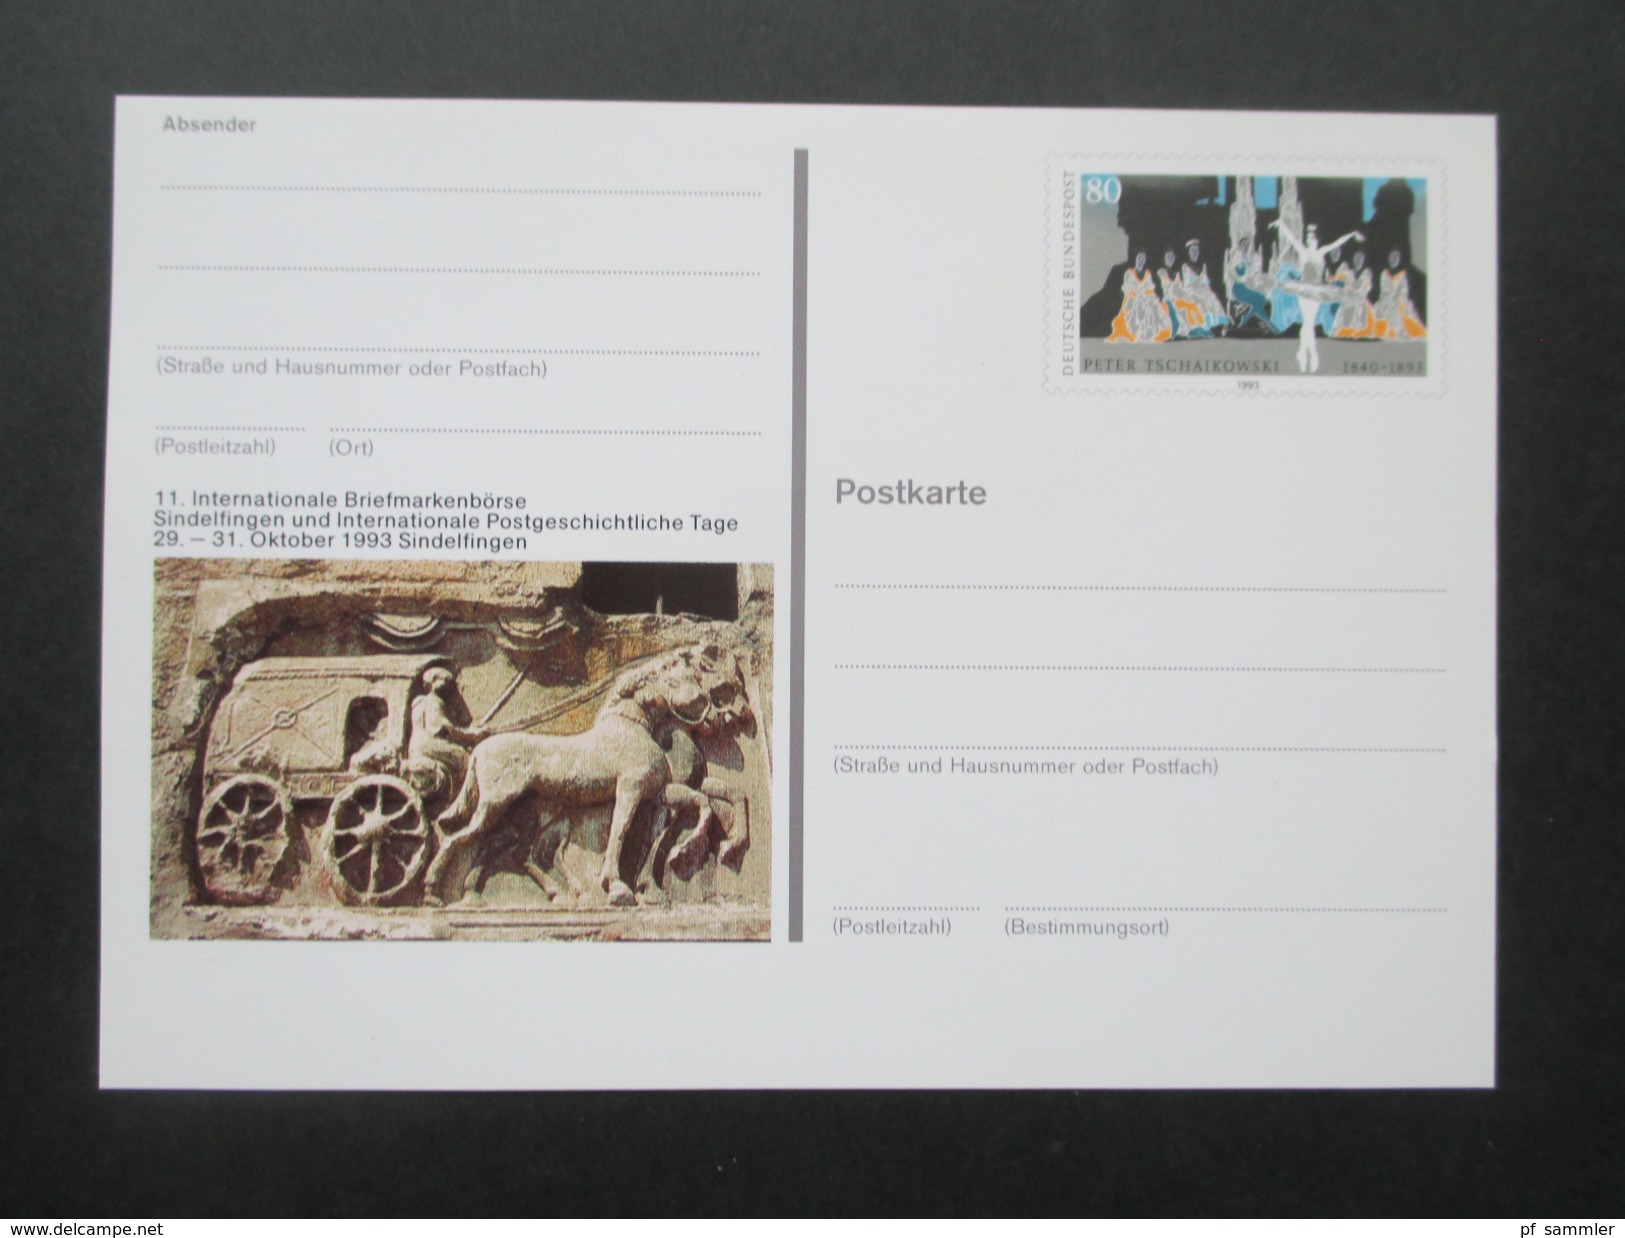 BRD Ganzsachen 1980 - 98 Sonderpostkarten! 82 Stück! Briefmarken Ausstellungen Usw. Ungebraucht / Guter Zustand! - Bildpostkarten - Ungebraucht